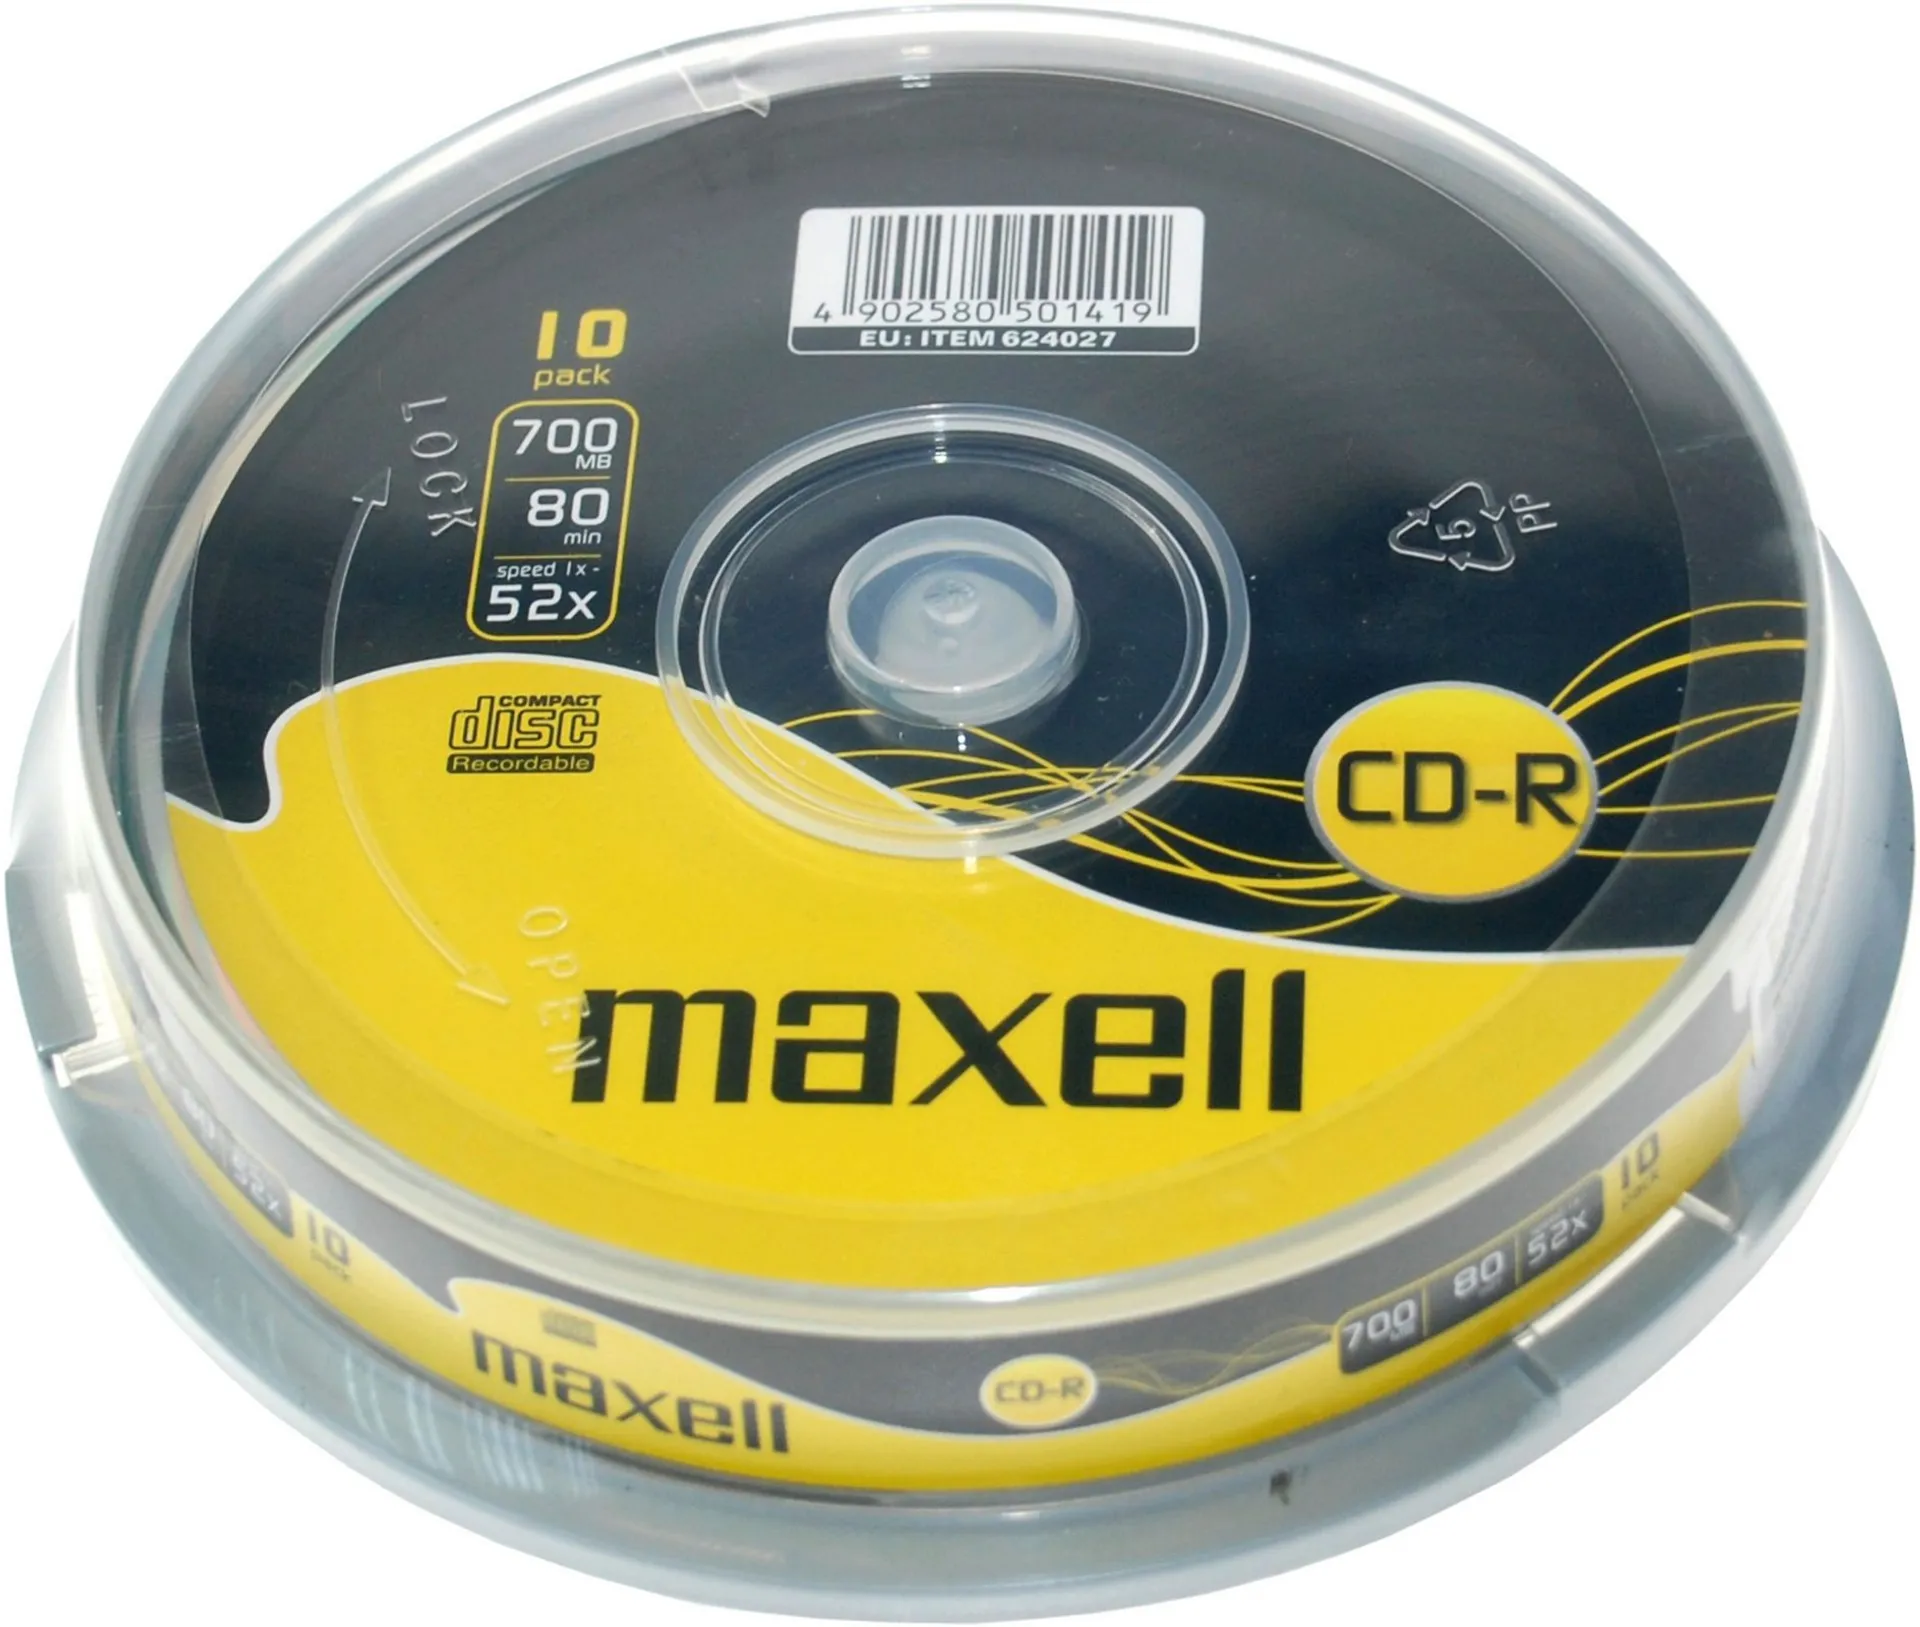 Maxell CD-R 80MIN 700MB 52x 10-pack